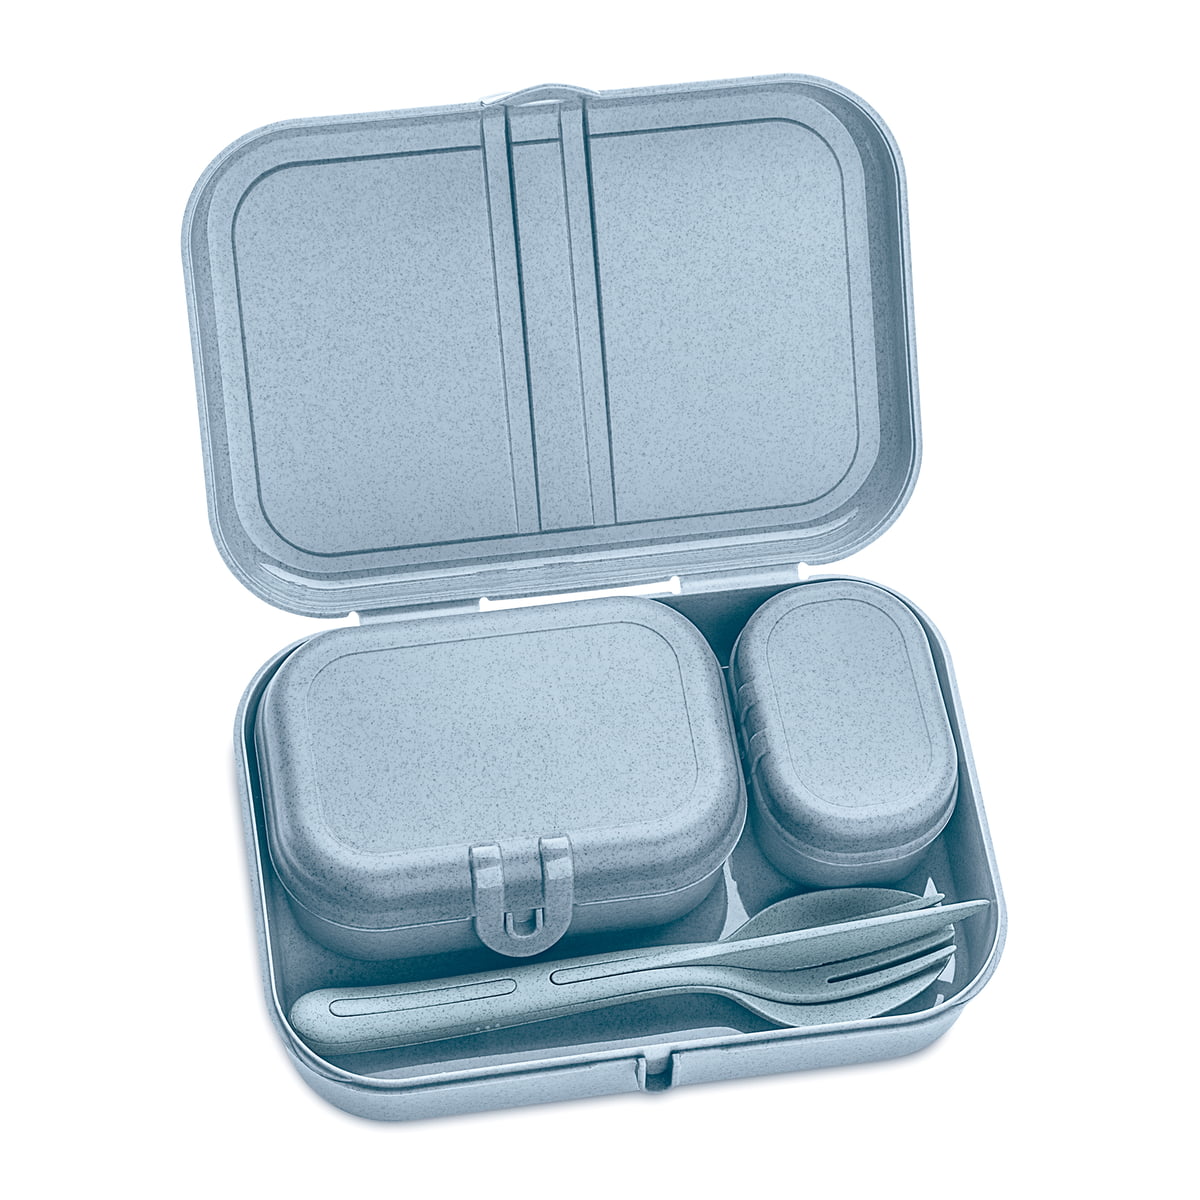 https://cdn.connox.com/m/100030/267959/media/Koziol/Pascal-Klikk/Koziol-Pascal-Ready-Lunchbox-Set-mit-Klikk-Besteck-organic-blue-offen.jpg